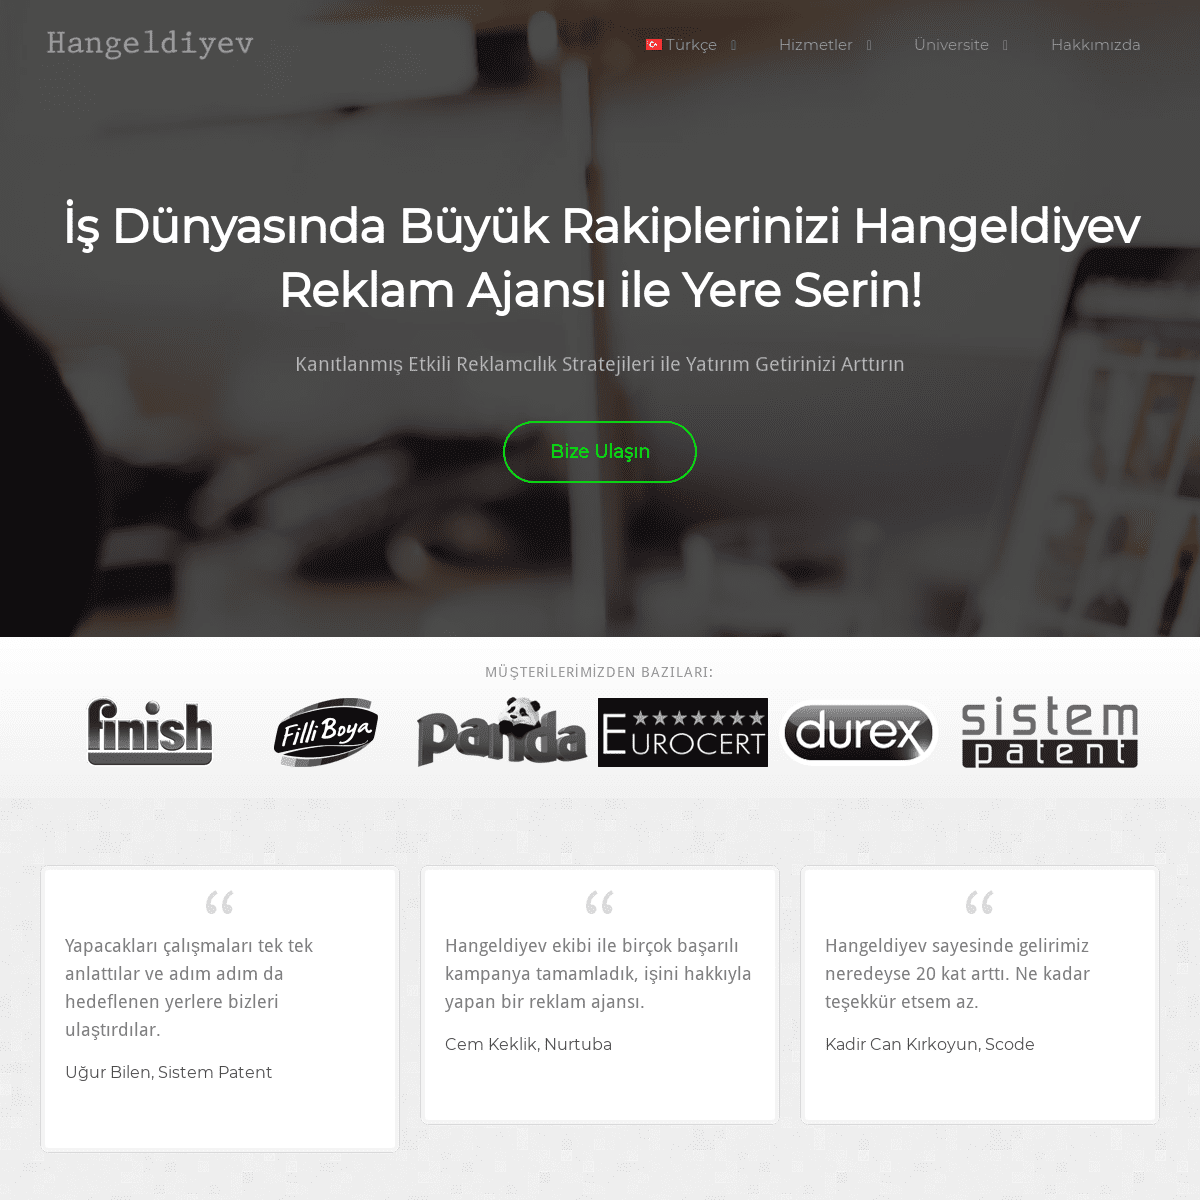 A complete backup of hangeldiyev.com